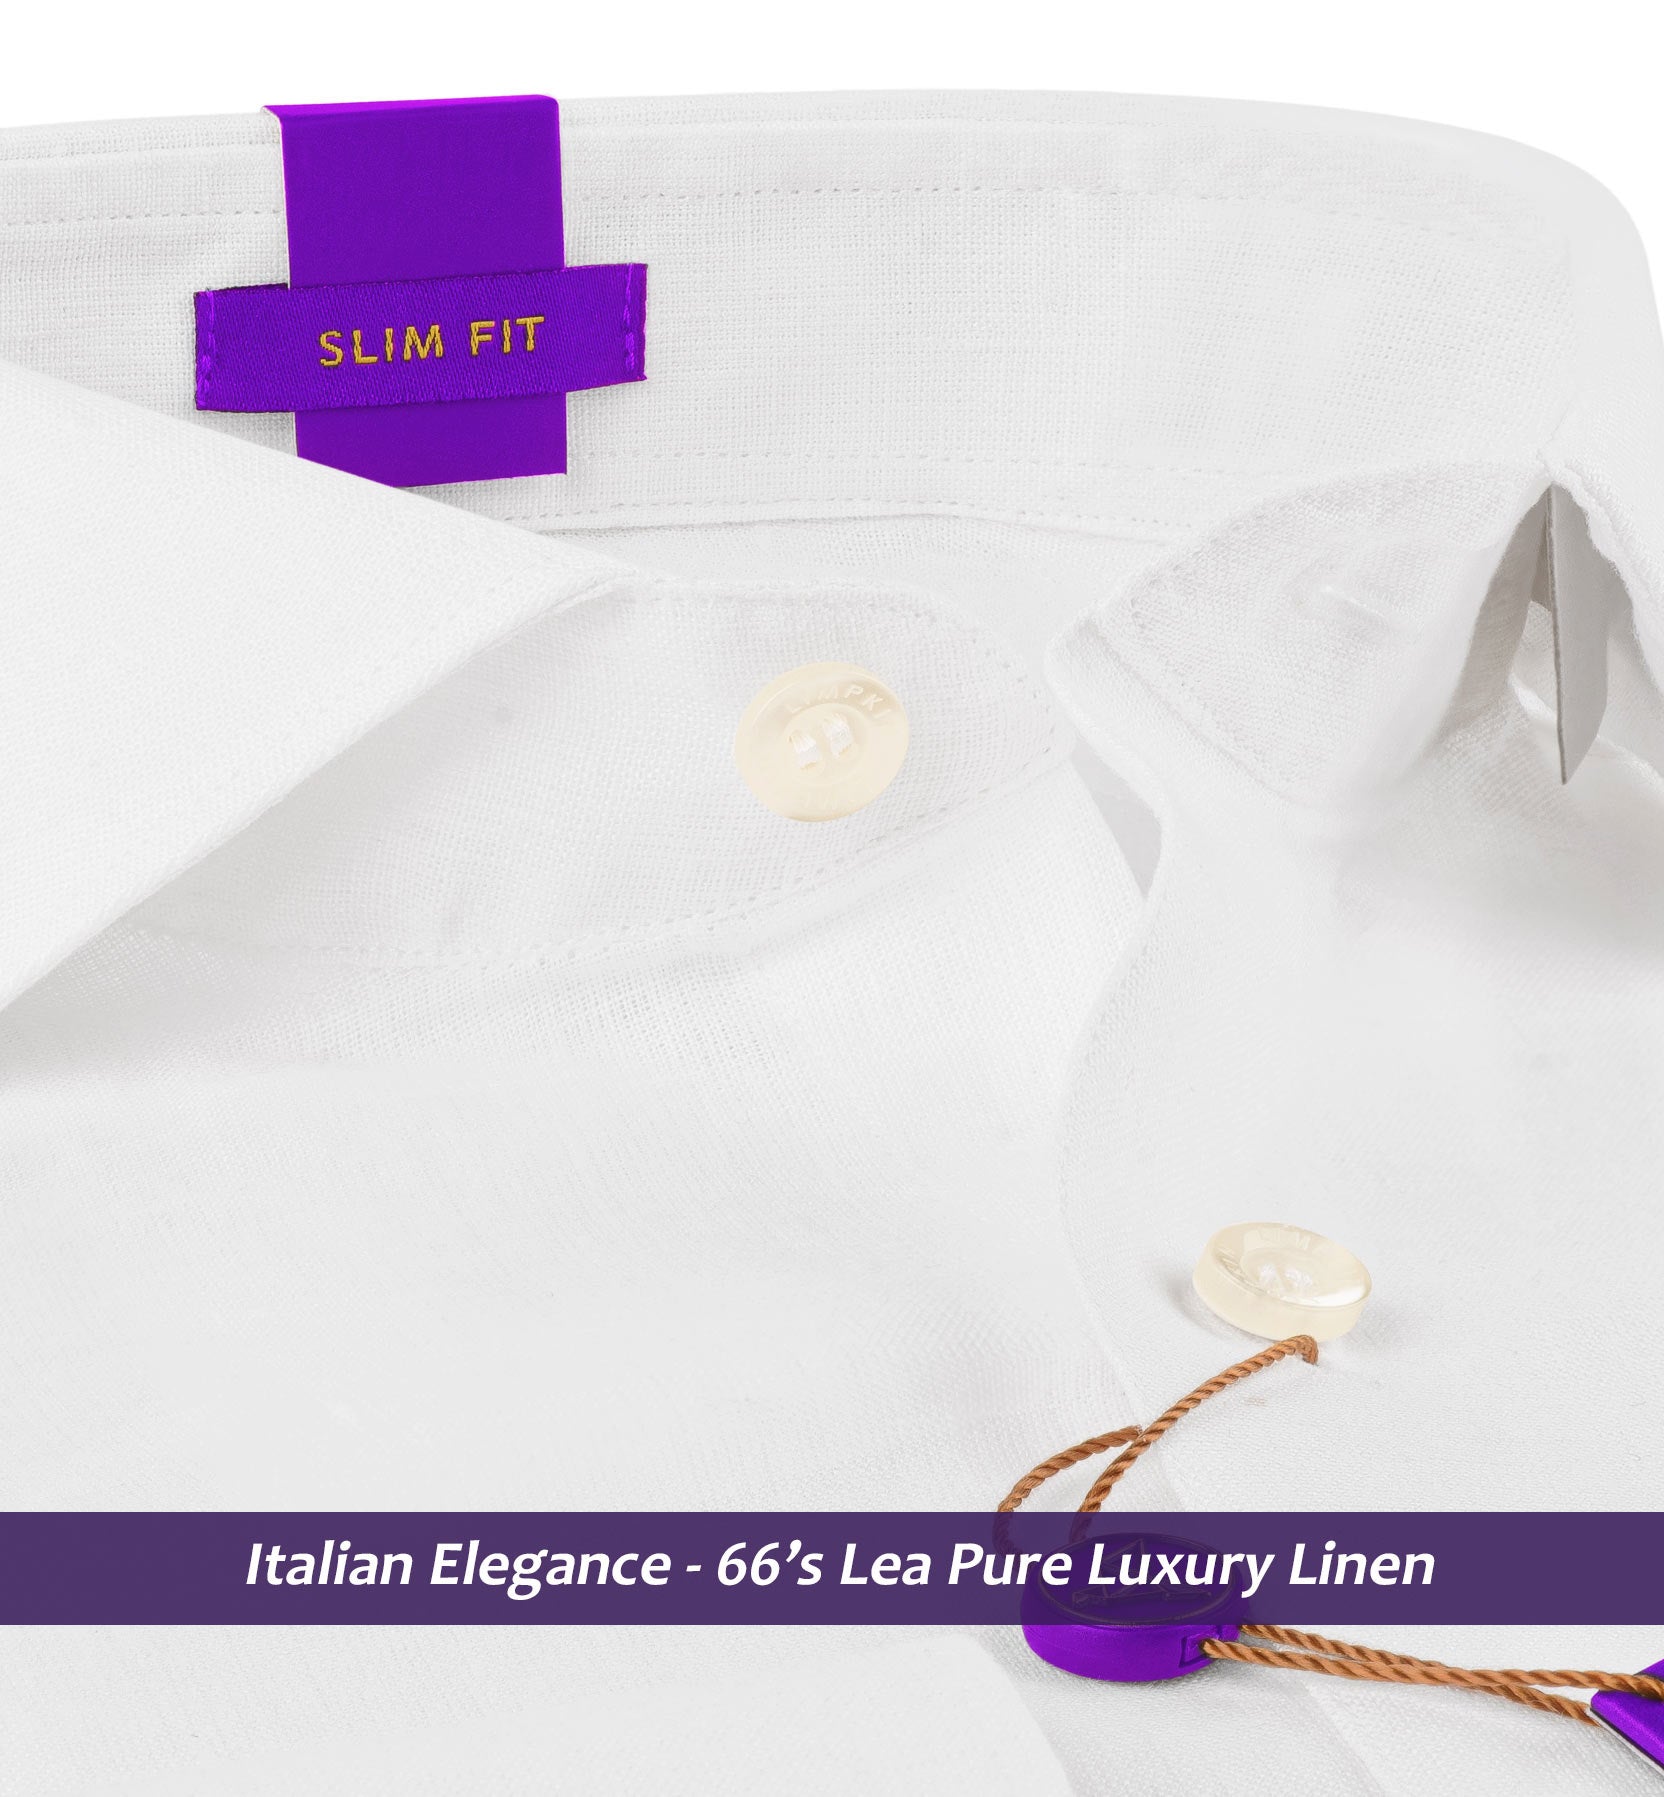 Seville- Pristine Pure White Linen- 66's Lea Pure Luxury Linen- Delivery from 29th April